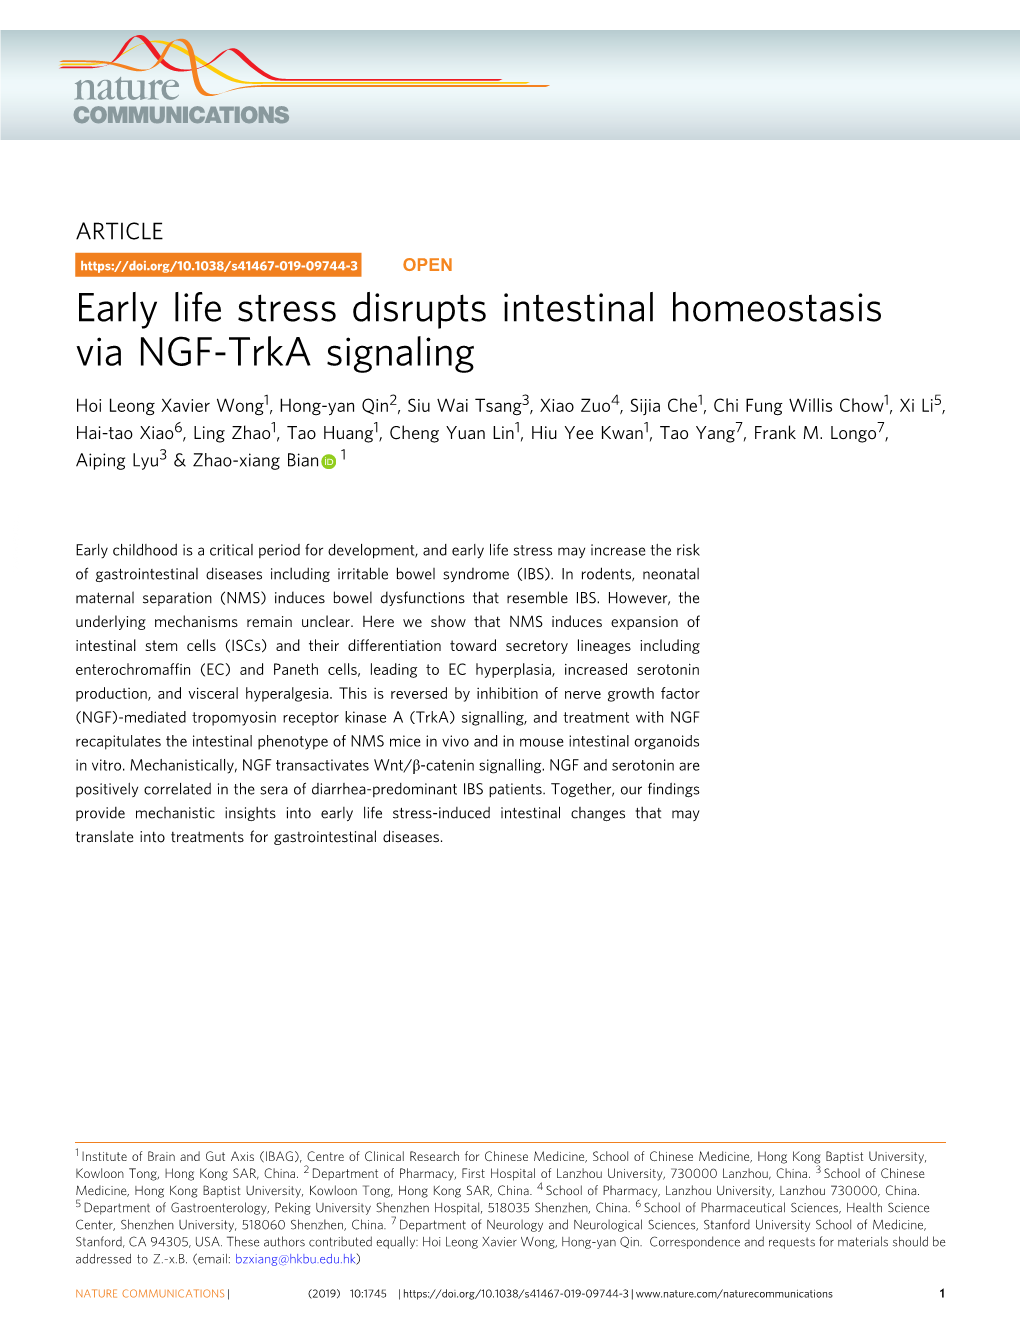 Early Life Stress Disrupts Intestinal Homeostasis Via NGF-Trka Signaling